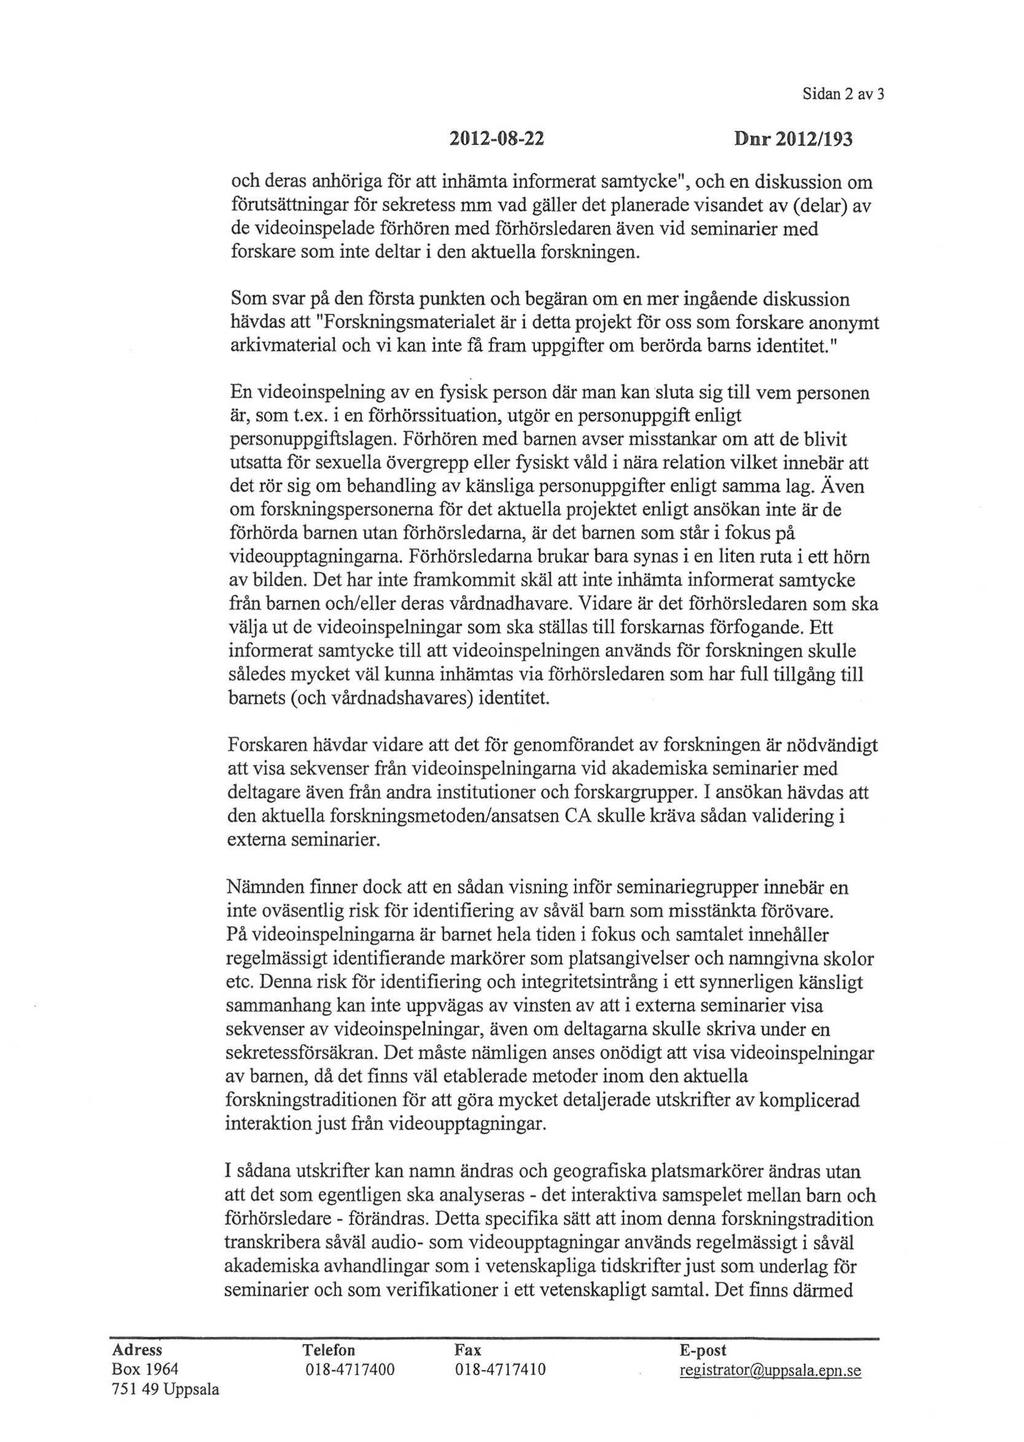 Sidan 2 av 3 2012-08-22 Dnr 2012/193 och deras anhöriga för att inhämta informerat samtycke", och en diskussion om förutsättningar för sekretess mm vad gäller det planerade visandet av (delar) av de